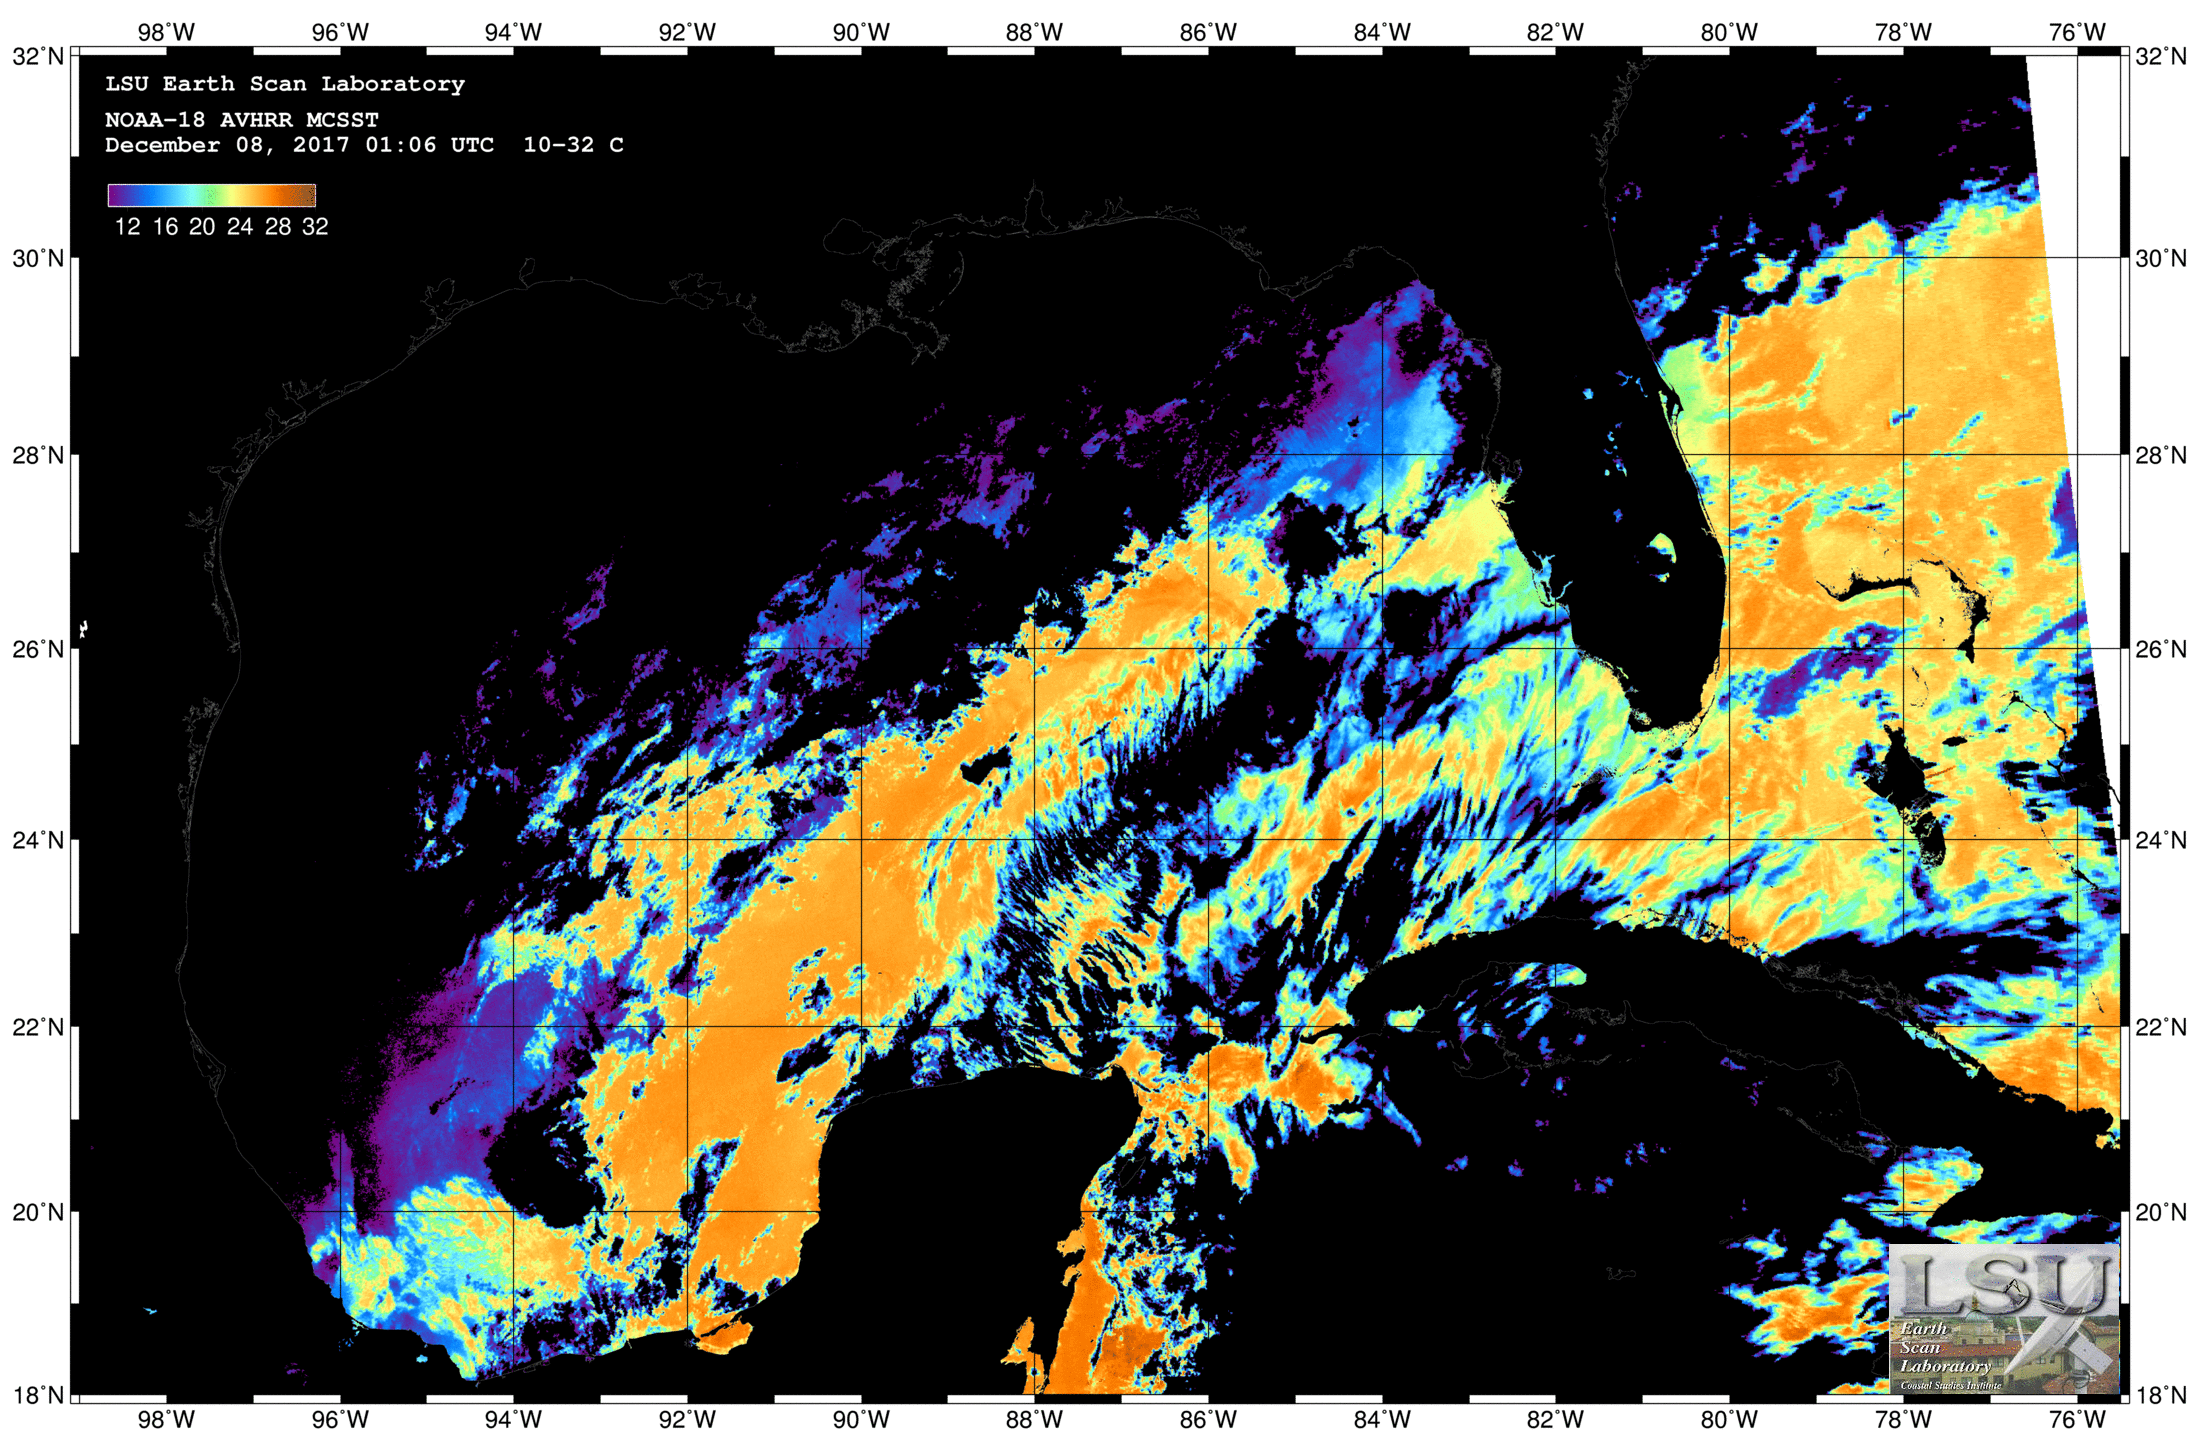 Dec 08 2017 01:06 UTC NOAA-18 SST - No Cloudmask